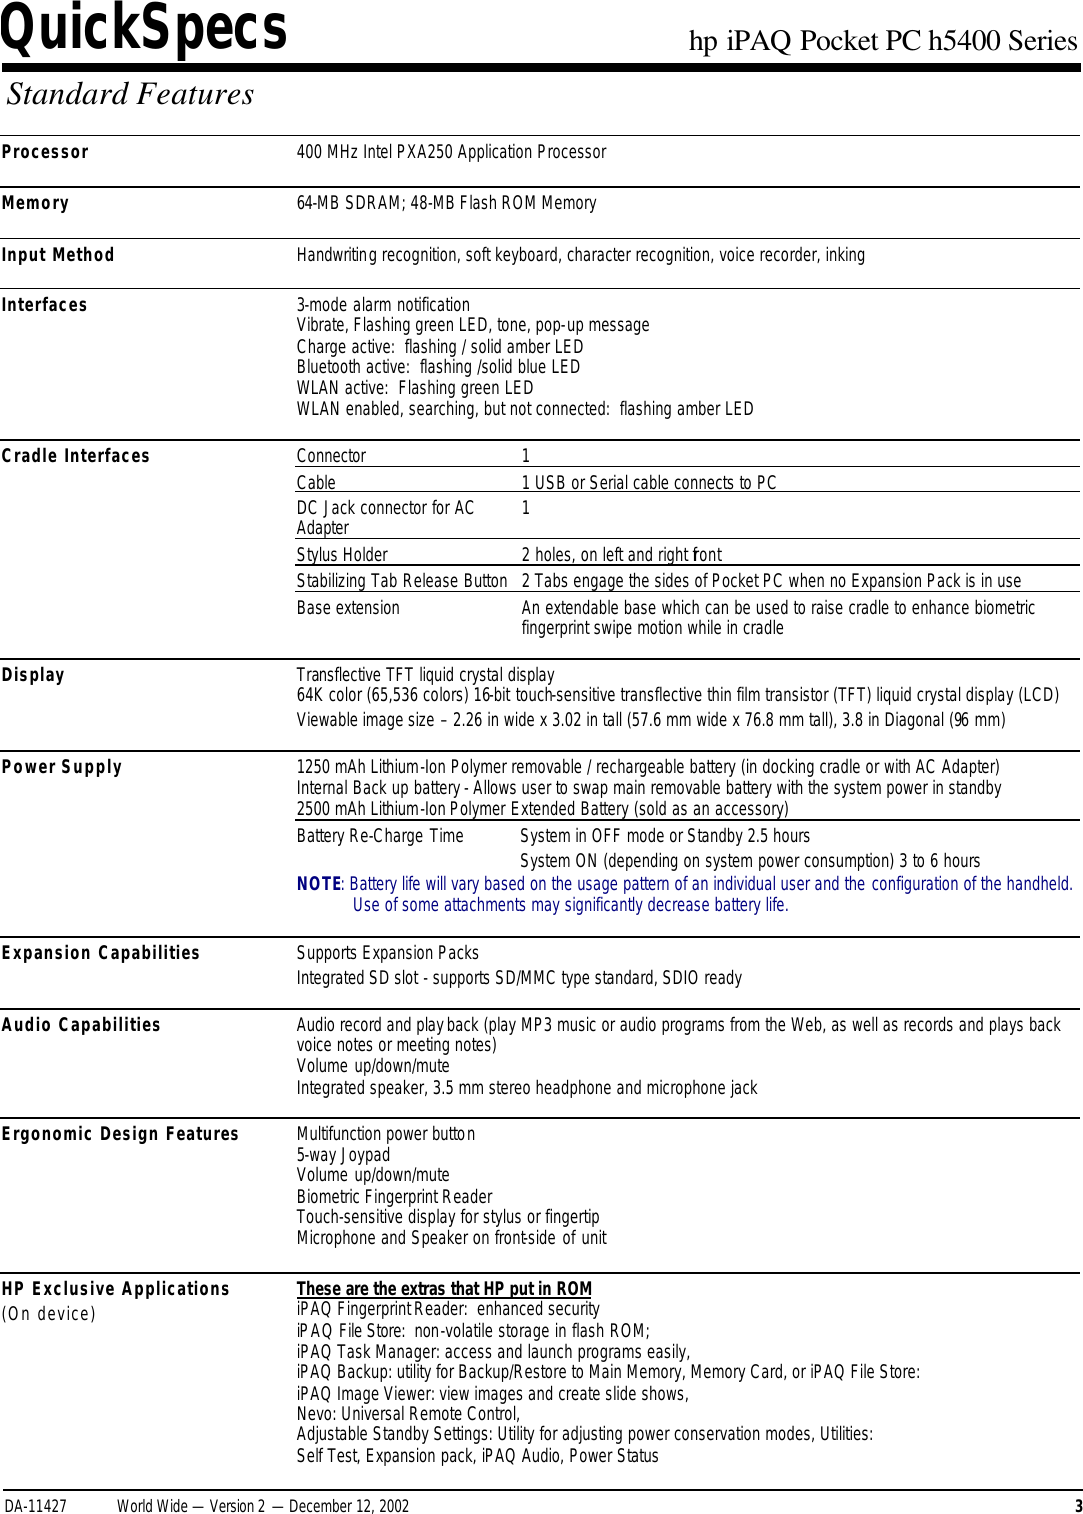 Page 3 of 11 - HP IPAQ Pocket PC H5400 Series - QuickSpecs Overview I PAQ Quick Specs Lpia8003